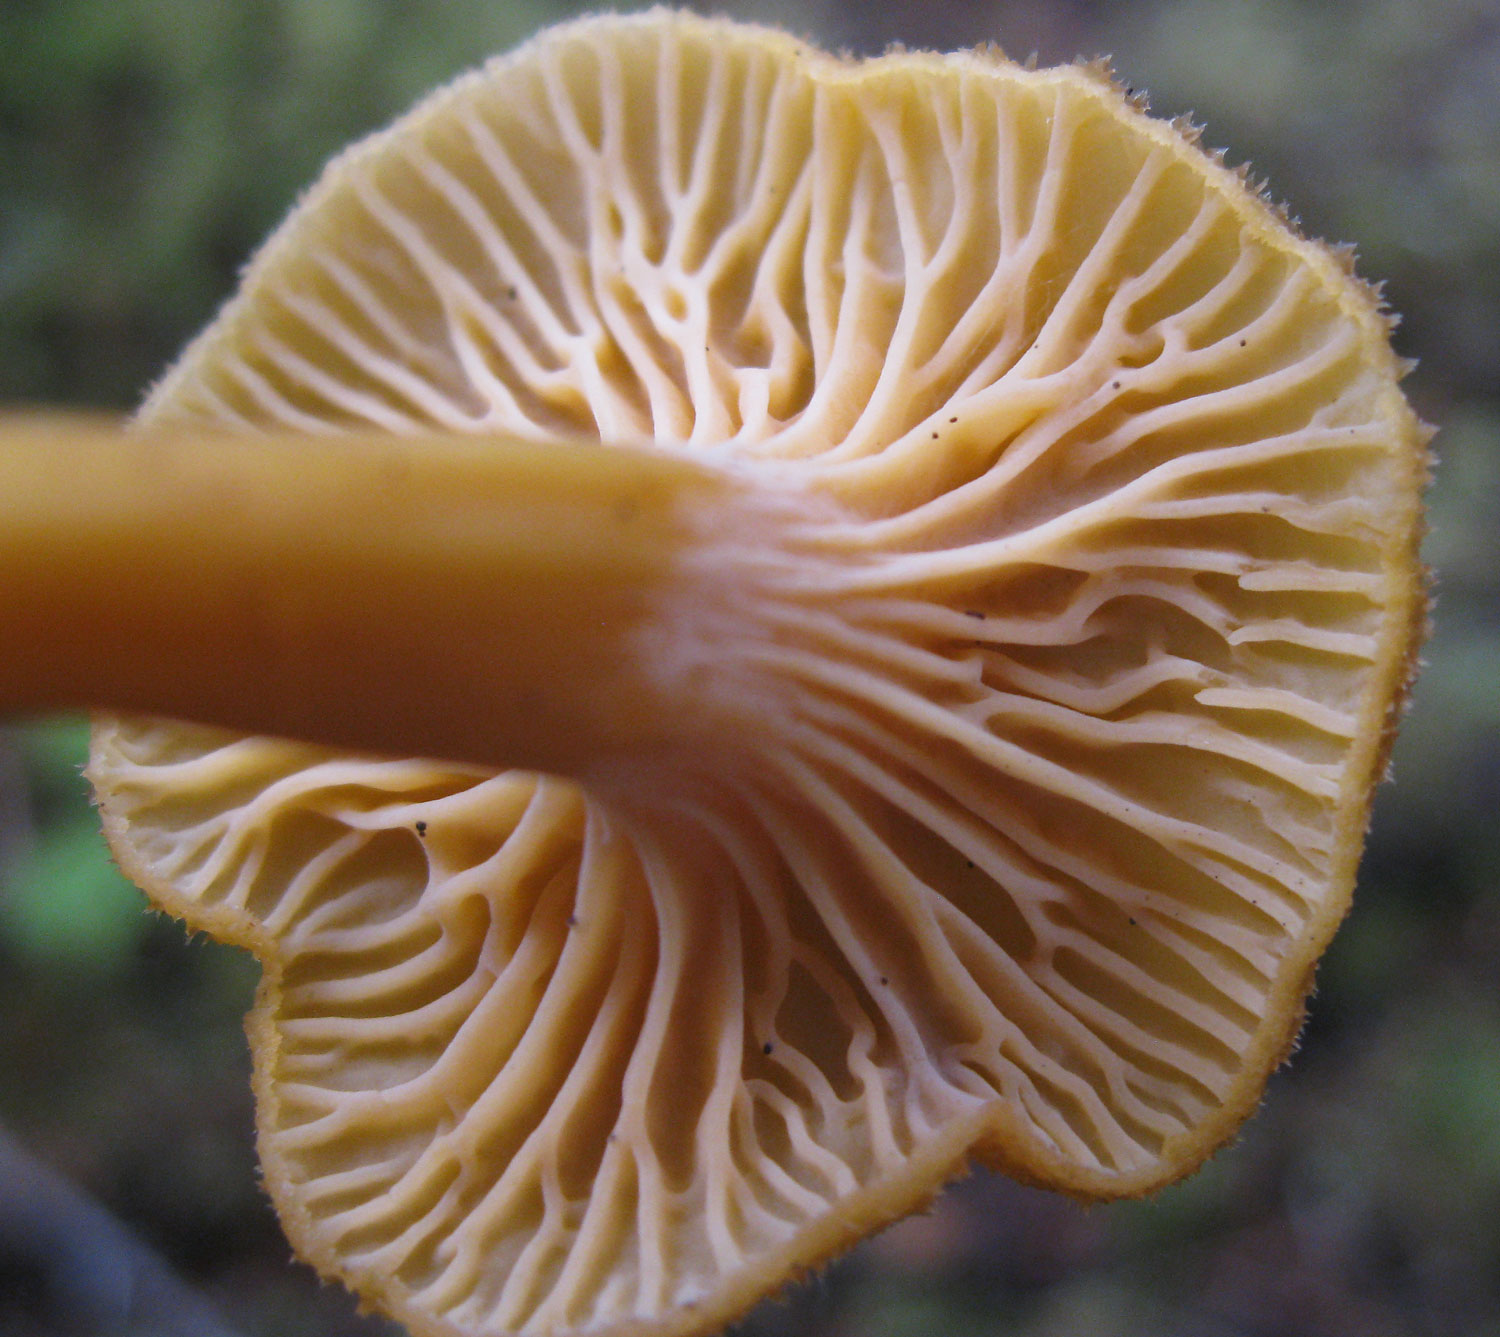 edible mushroom winter chanterelle veins ridges not gills Southeast Alaska